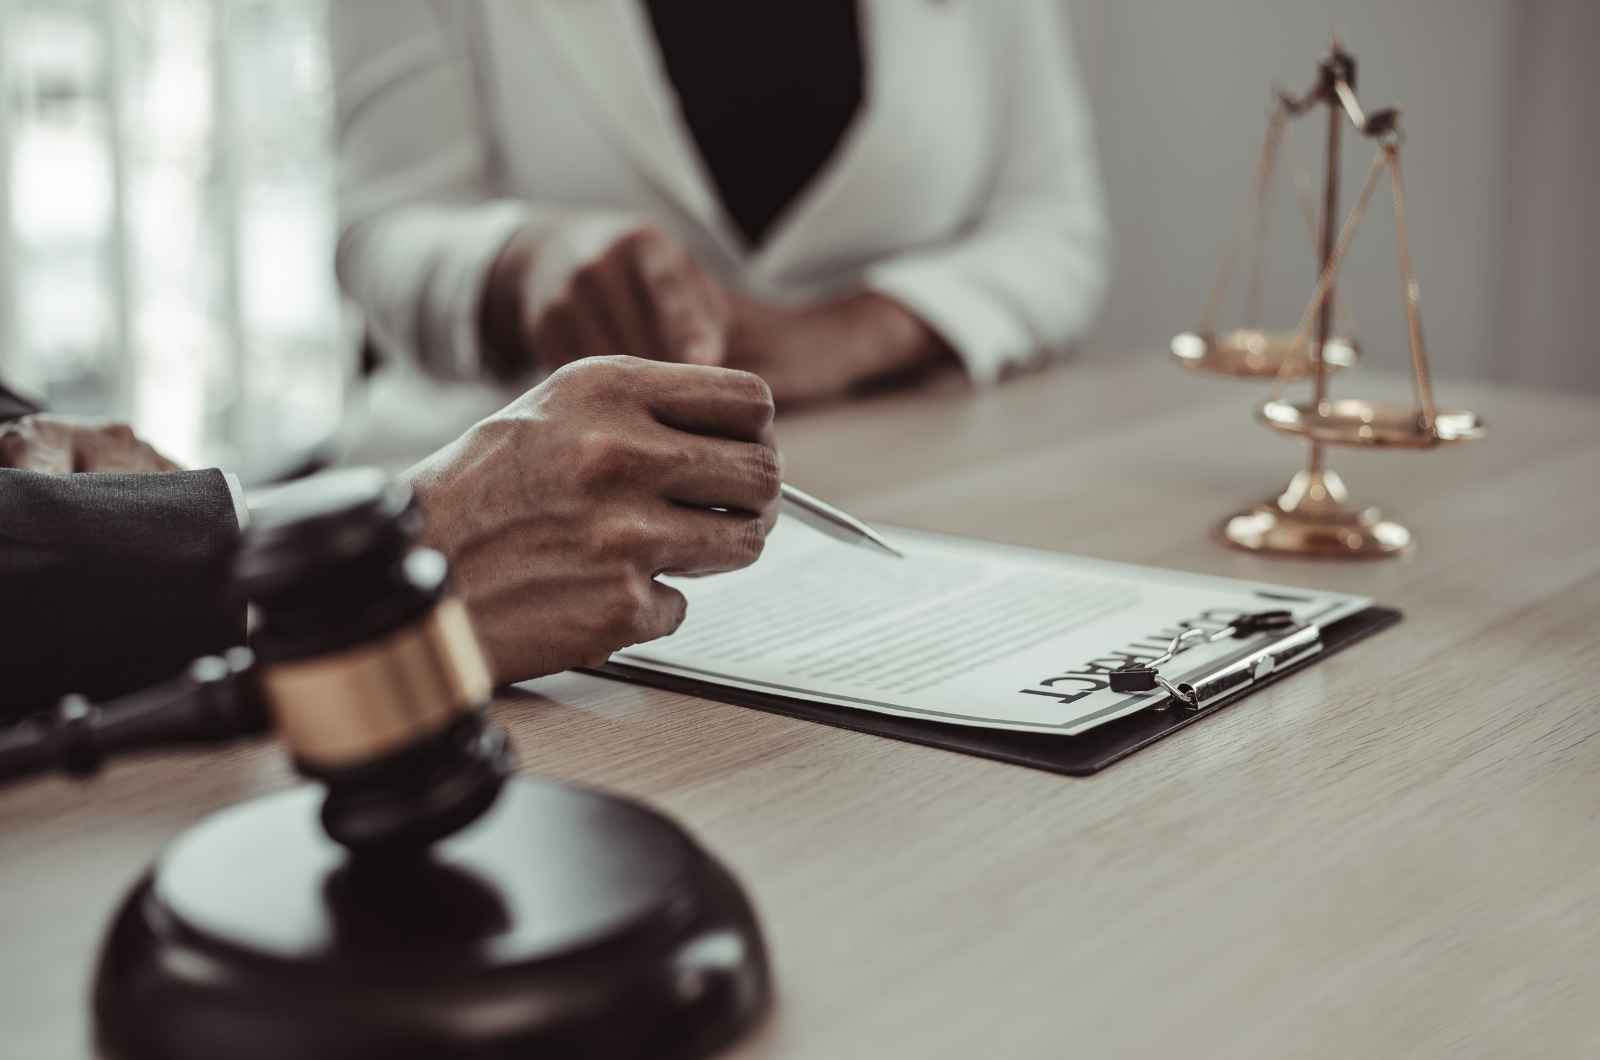 ניווט בסכסוכי משפחה: כיצד עורך דין דיני משפחה יכול לעזור להגן על זכויותיך?